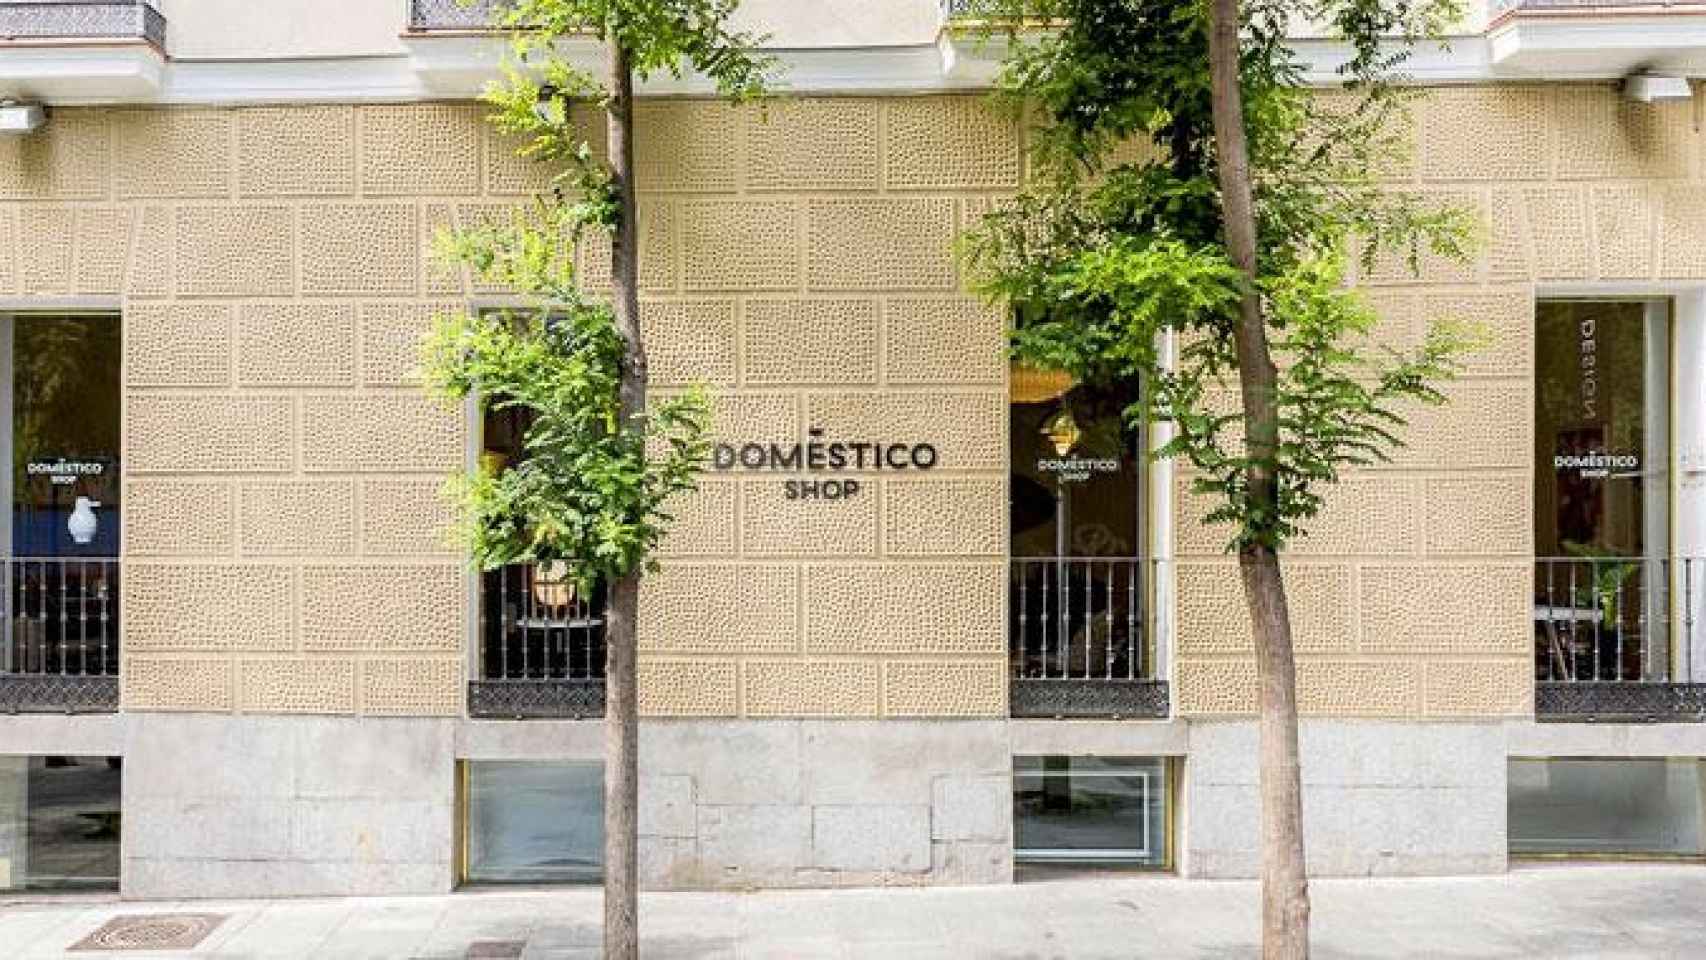 Fachada del establecimiento de muebles pijo de Madrid, operado desde este verano por la catalana Domésticoshop / CG